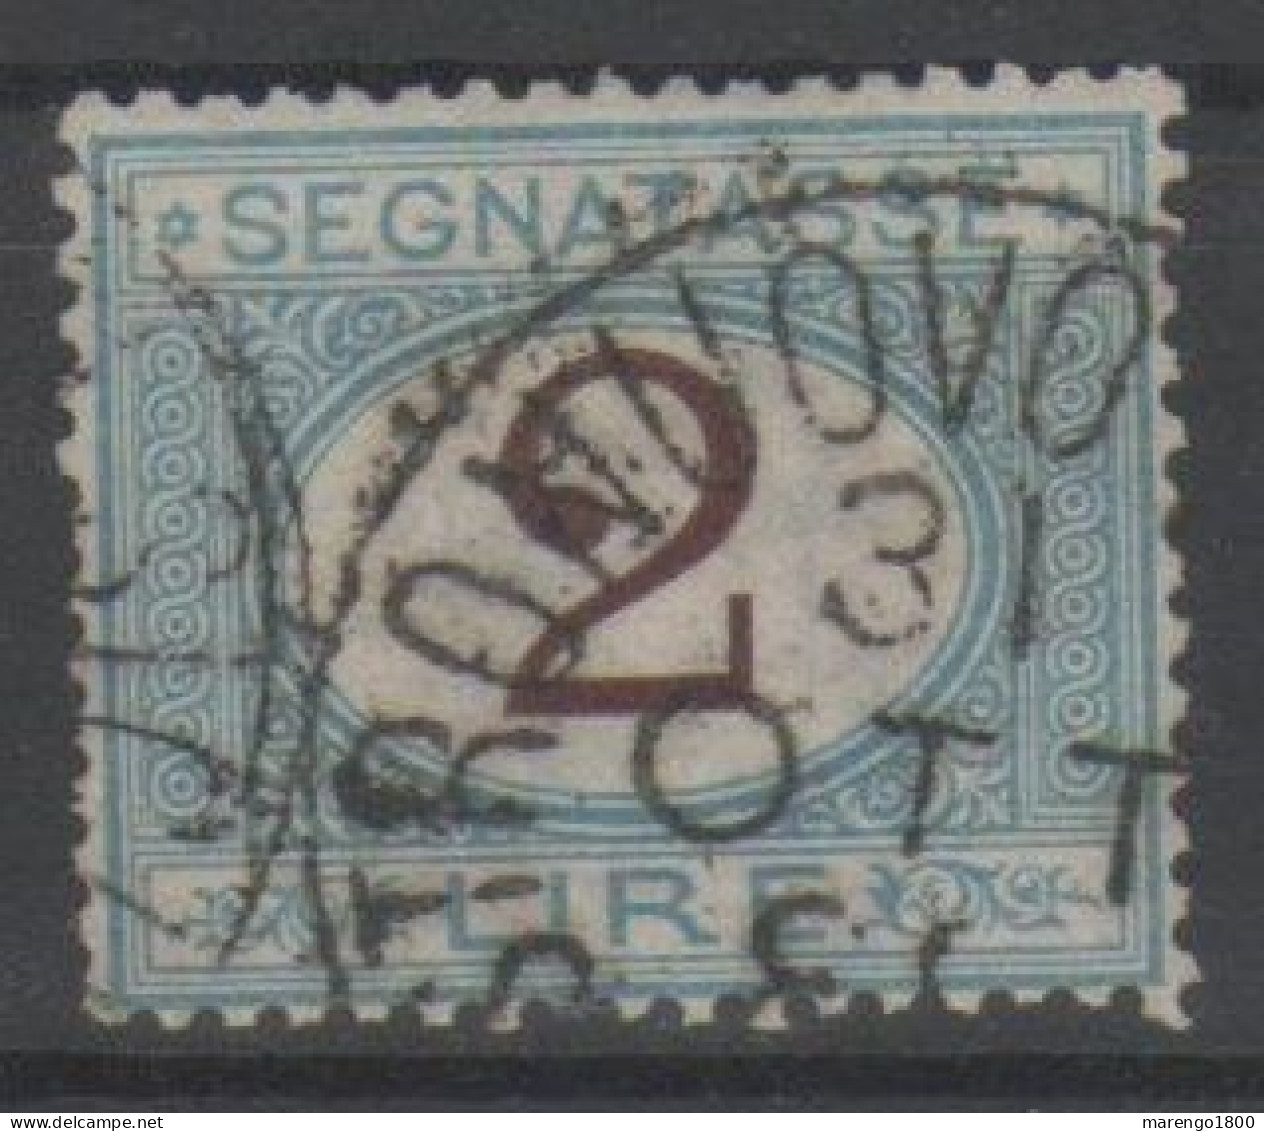 ITALIA 1870 - Segnatasse 2 L. - Segnatasse